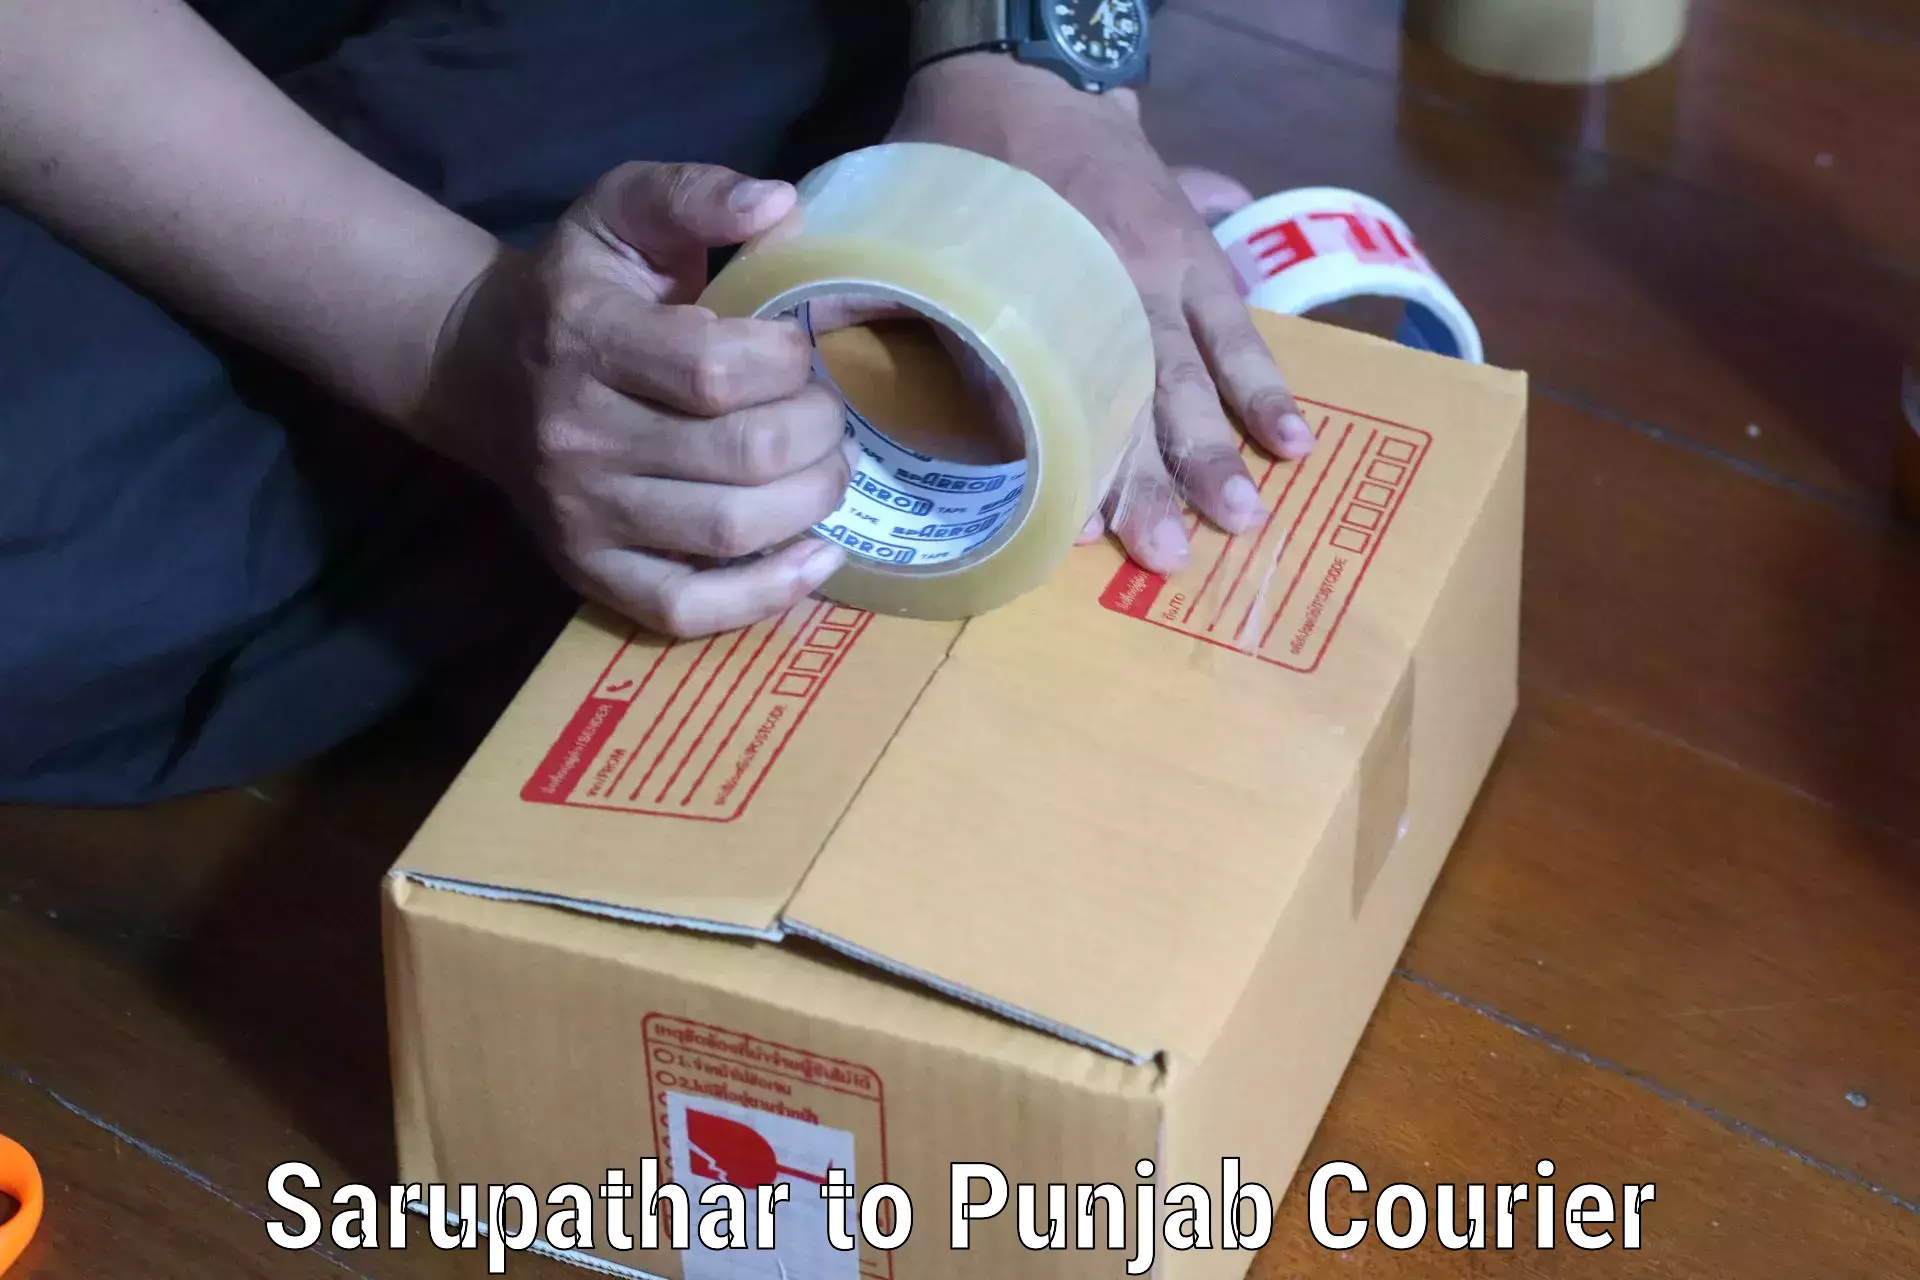 Professional courier handling Sarupathar to Kapurthala